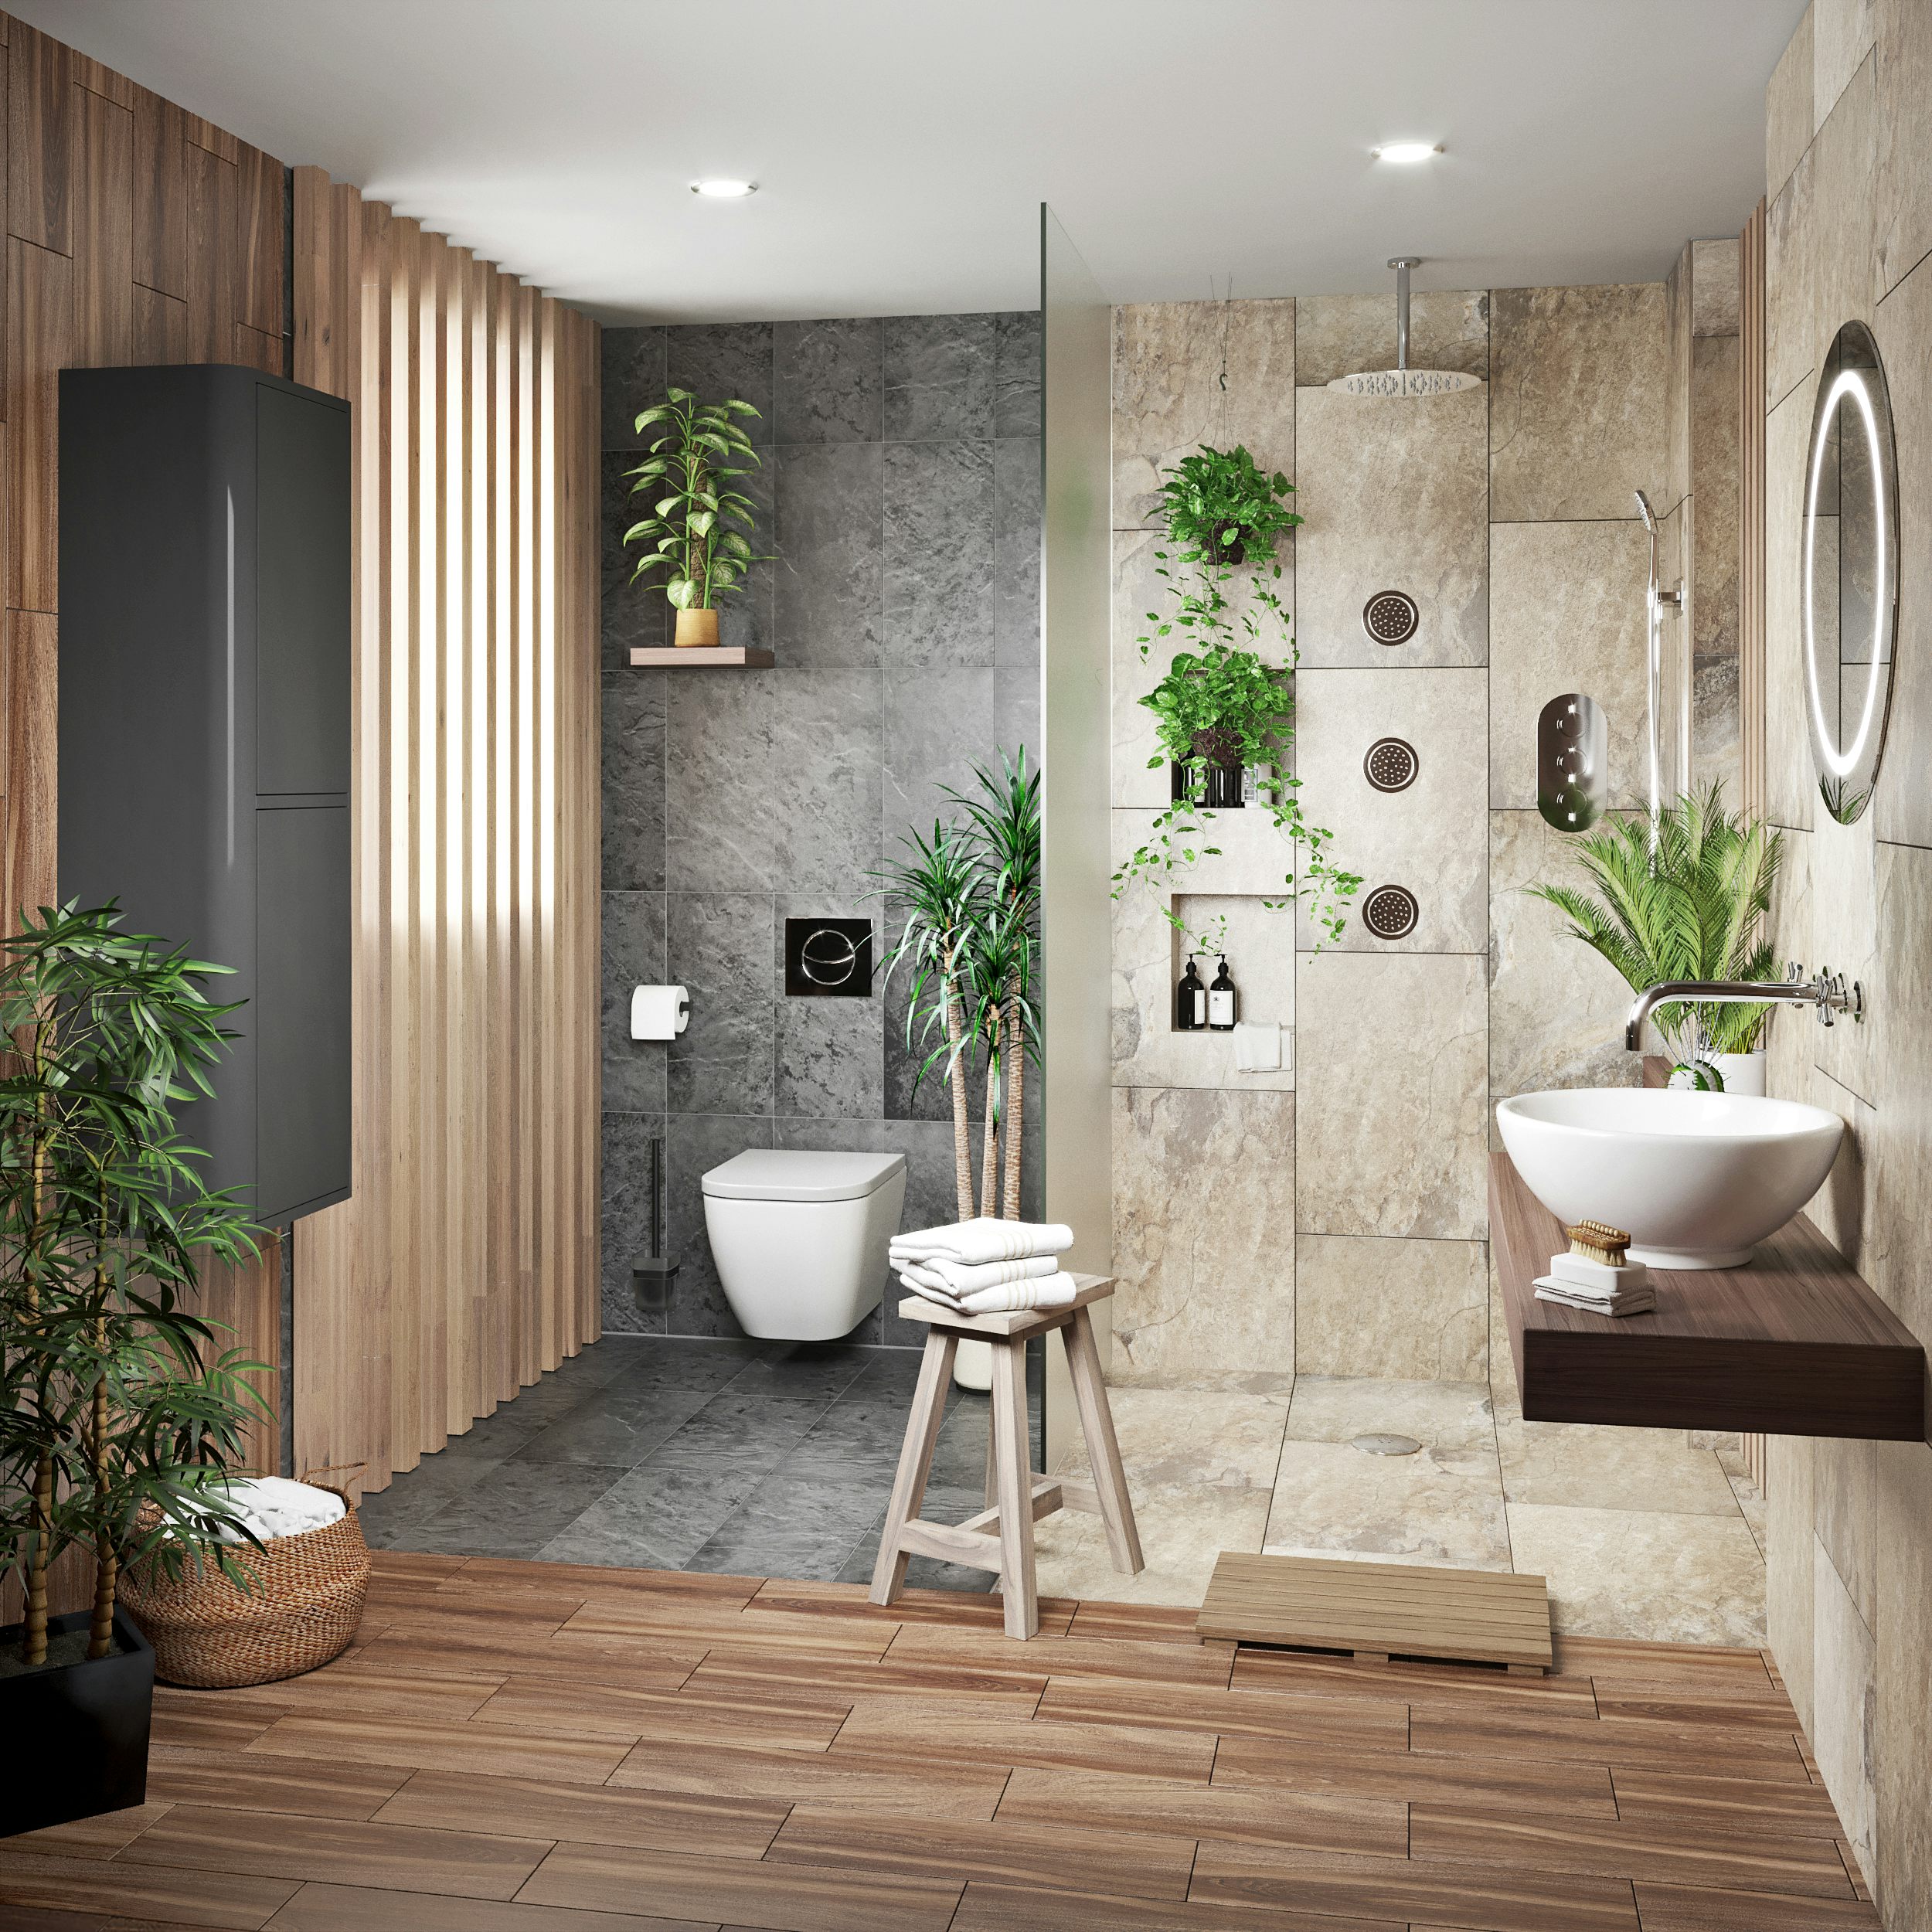 Simple Tropical Bathroom with Simple Decor